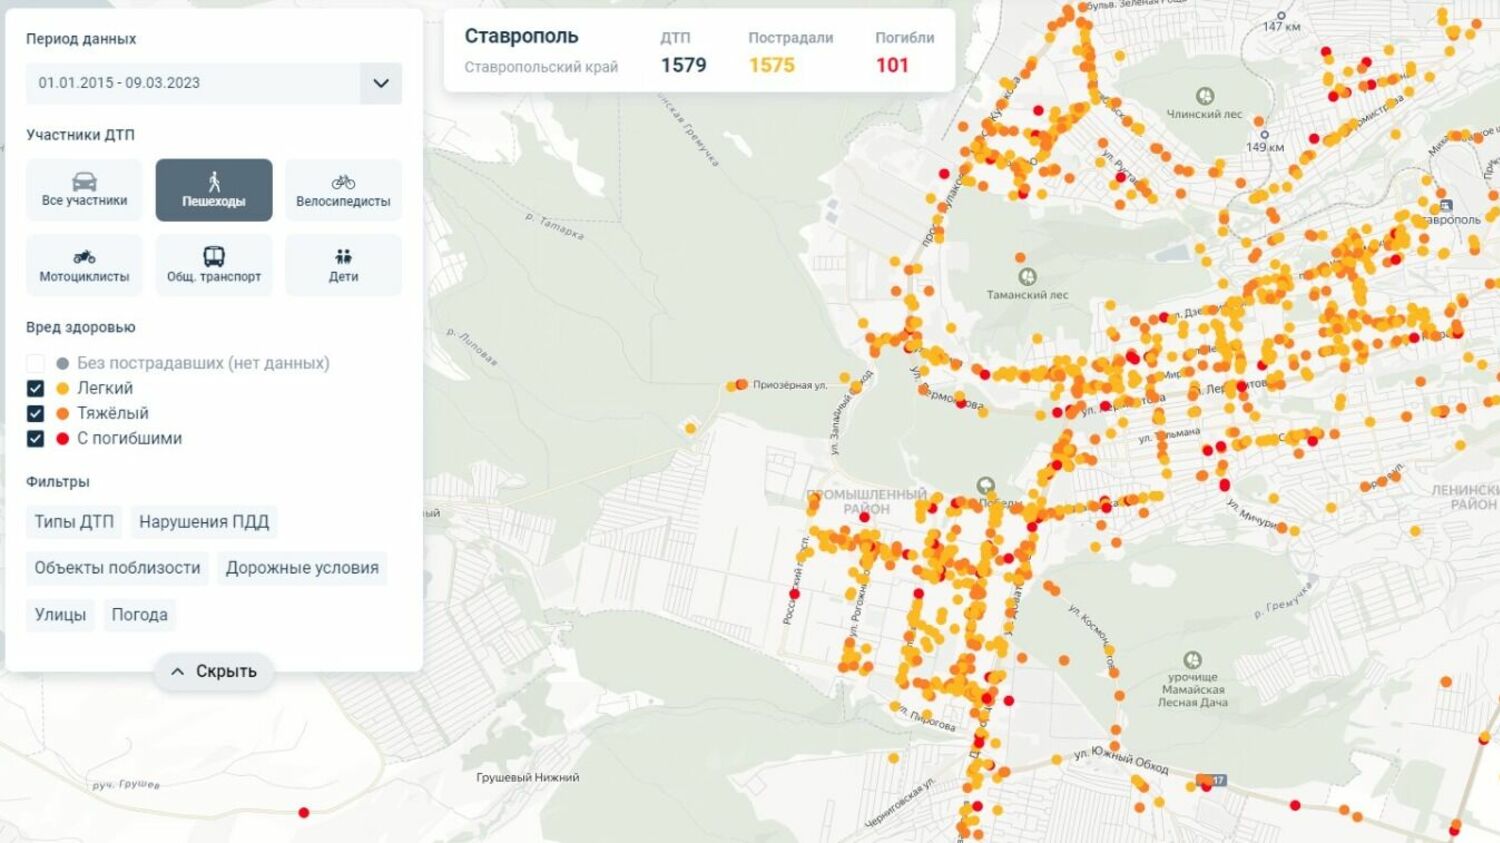 Карта ДТП Ставрополя с участием пешеходов с 2015 года